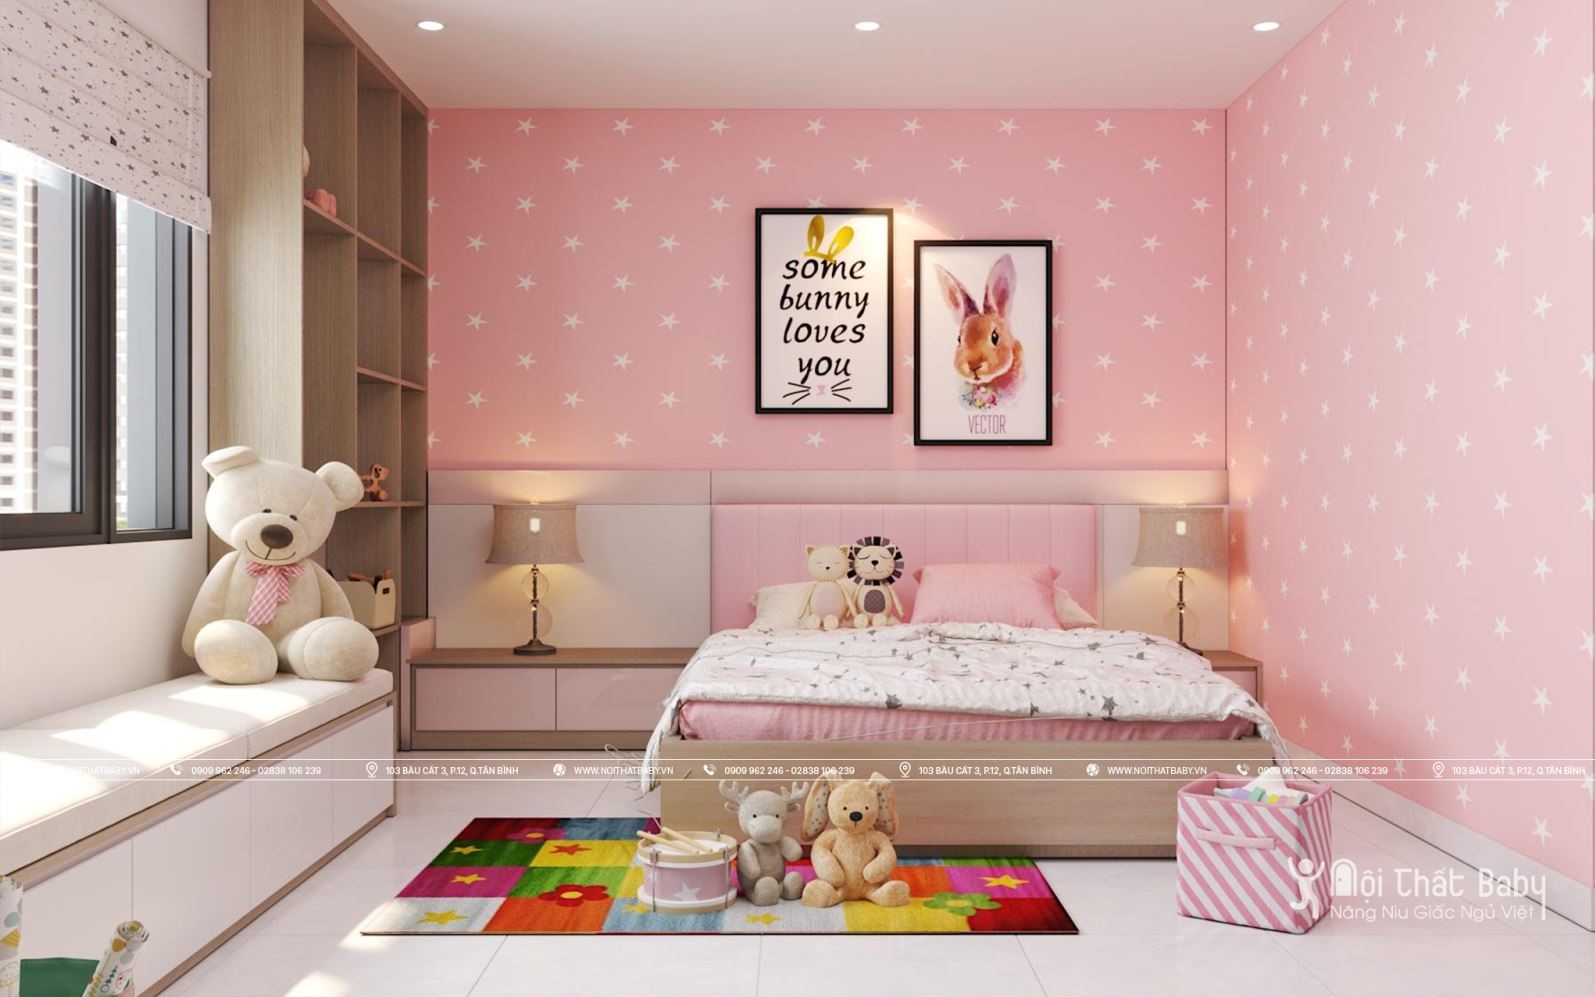 Tuyệt chiêu thiết kế nội thất phòng ngủ trẻ em siêu dễ thương